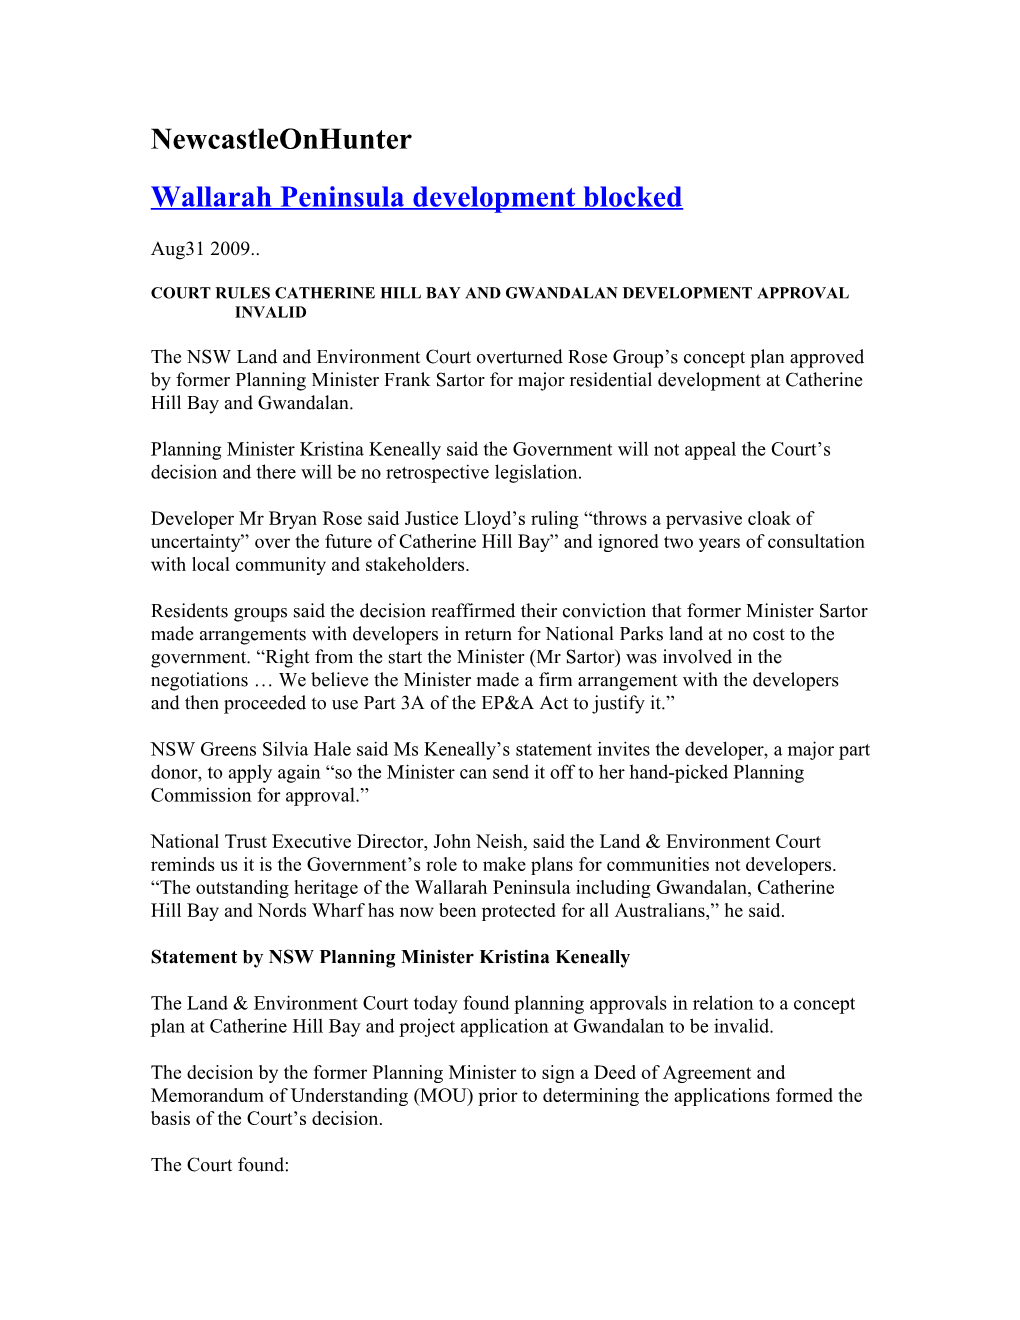 Wallarah Peninsula Development Blocked